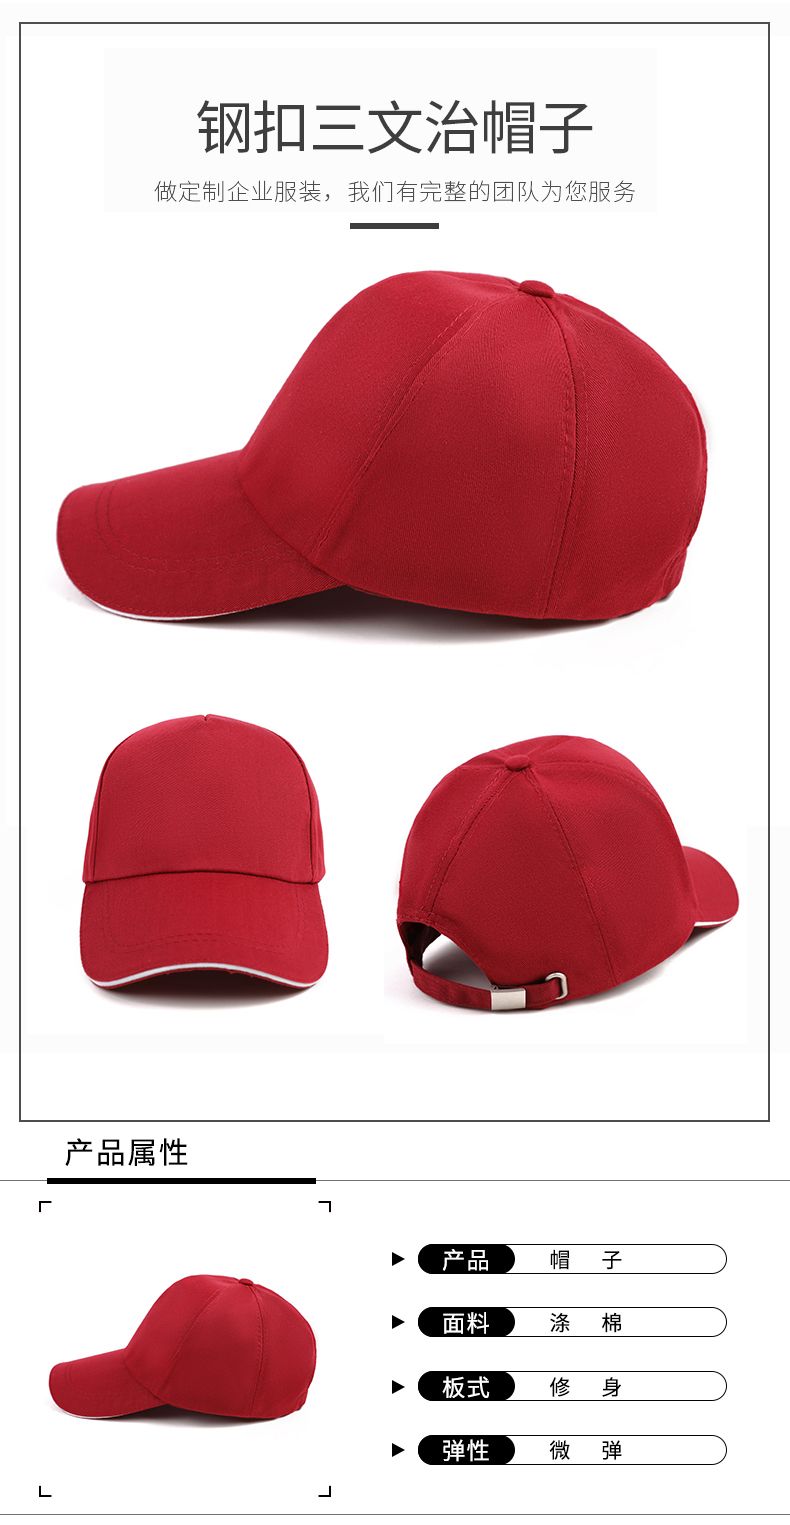 武汉帽子规格